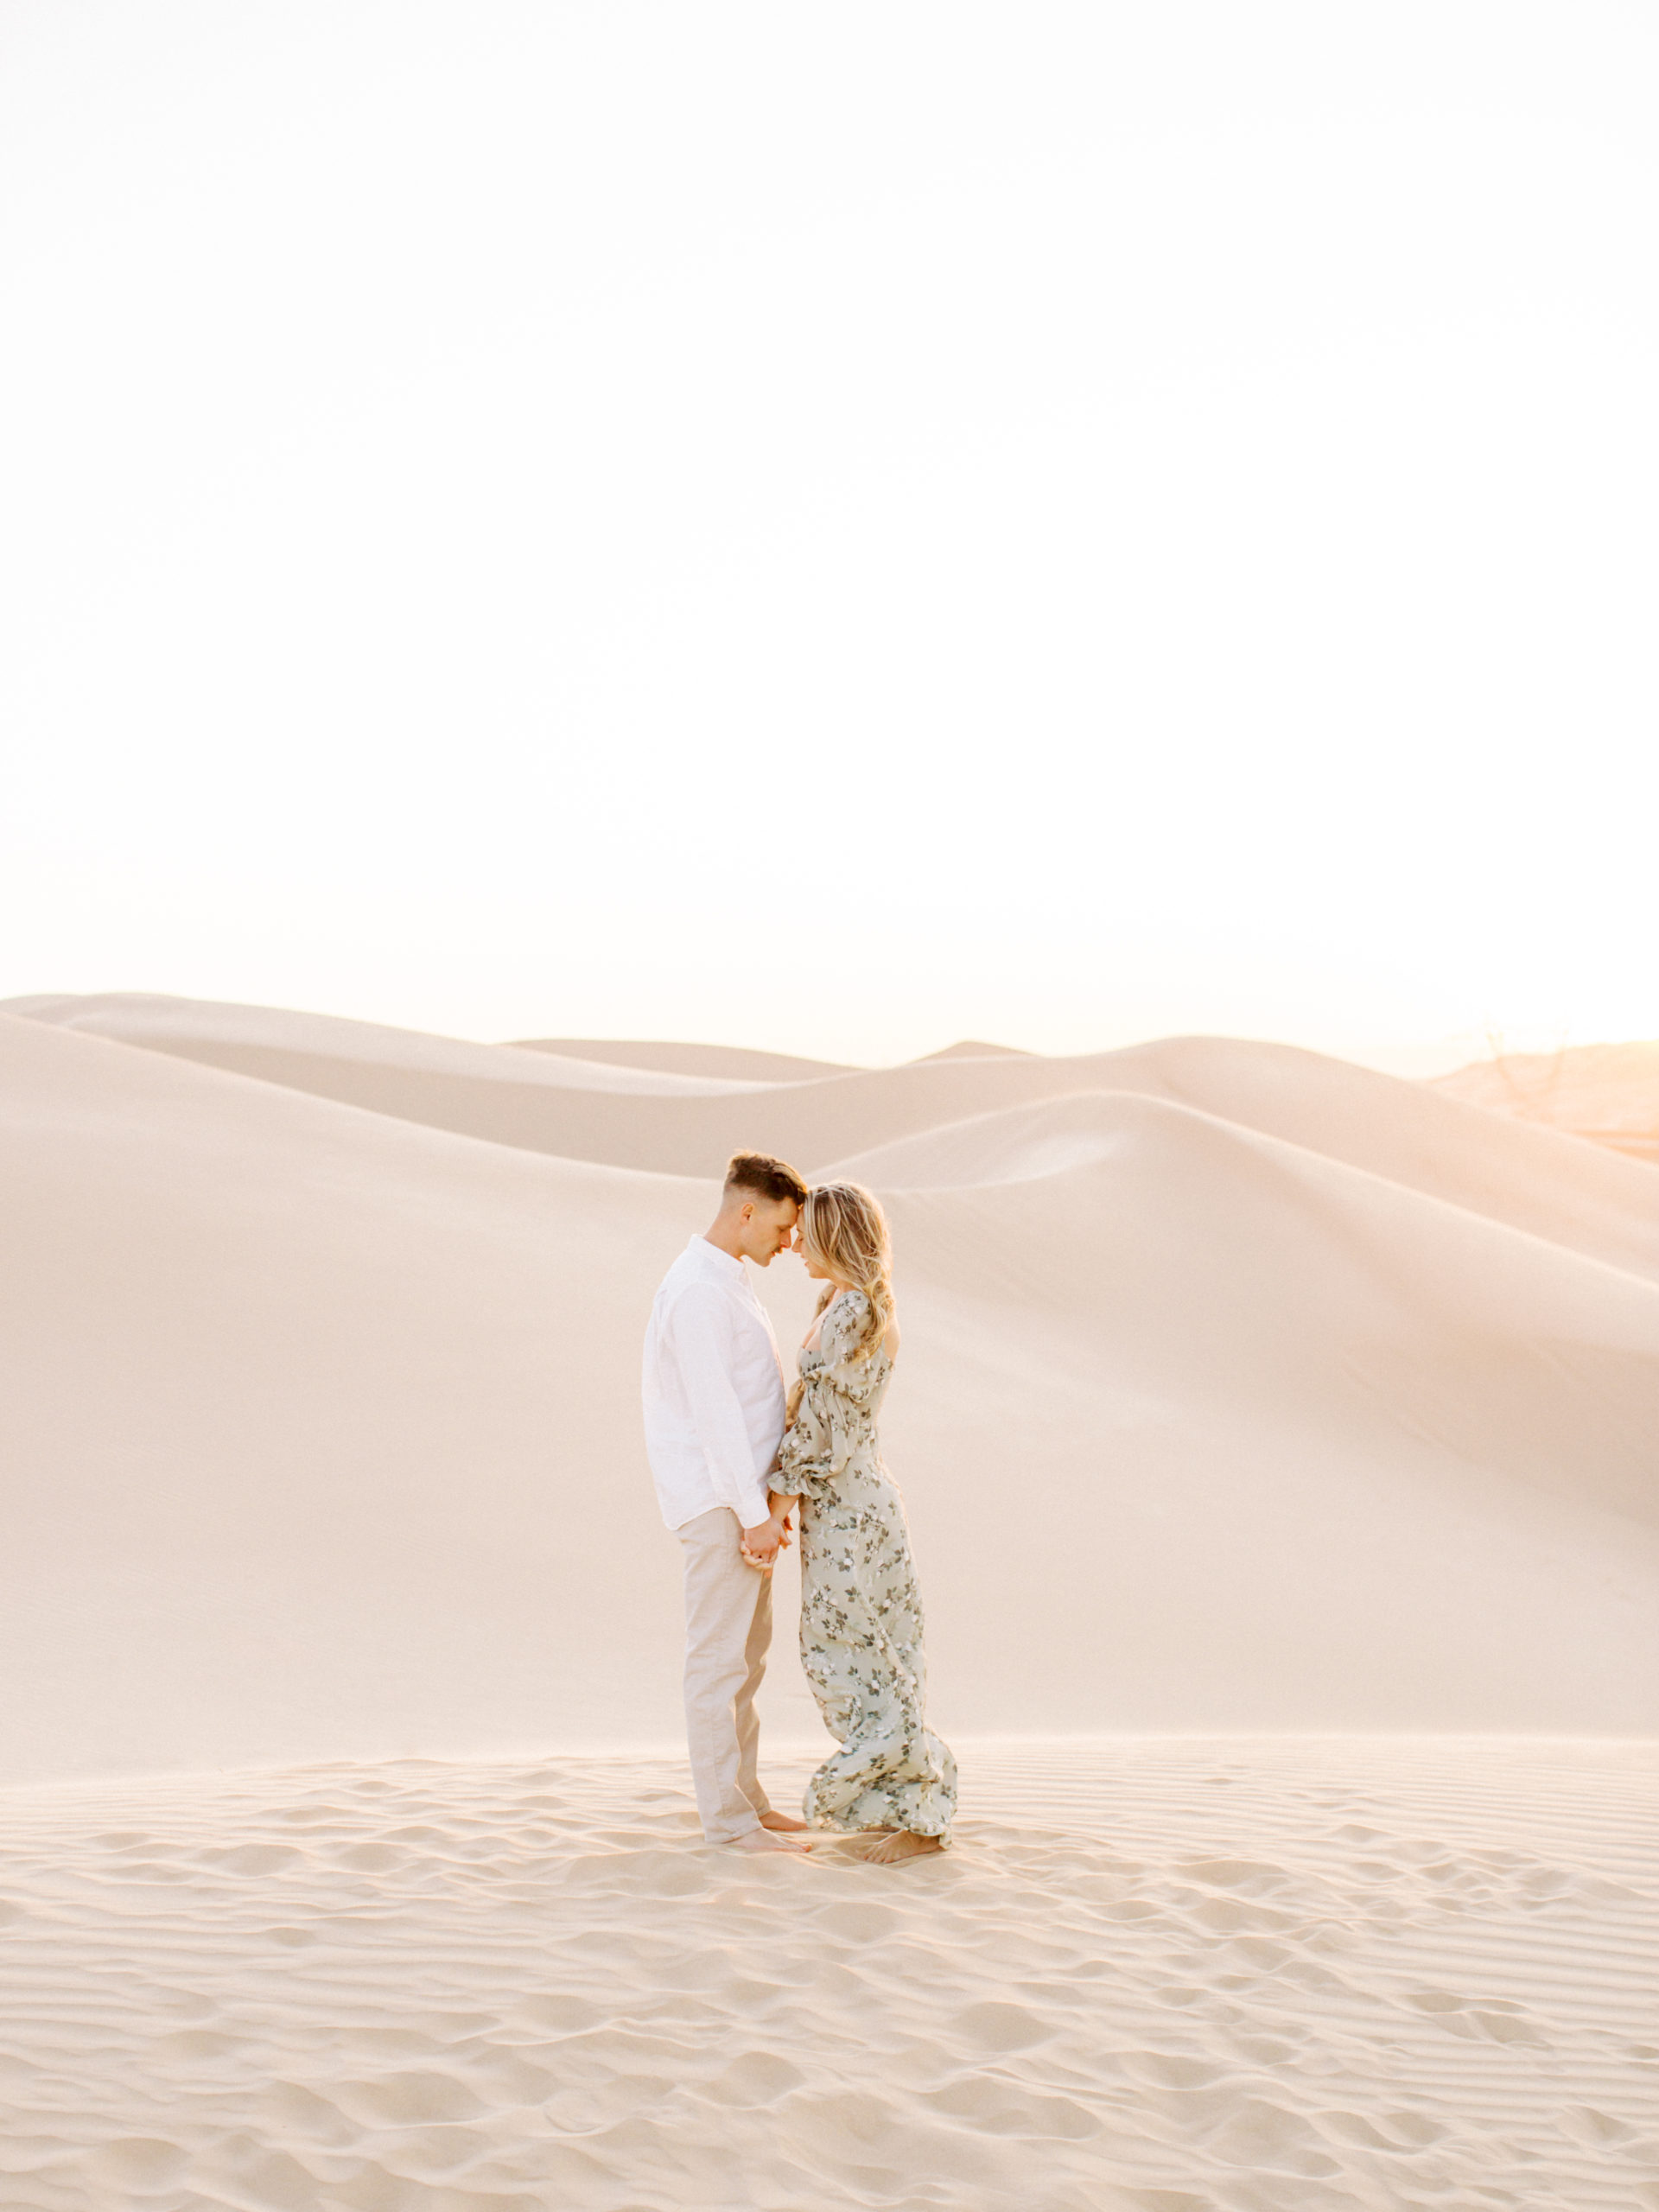 imperial-dunes-yuma-engagement-couple-holding-hand-image